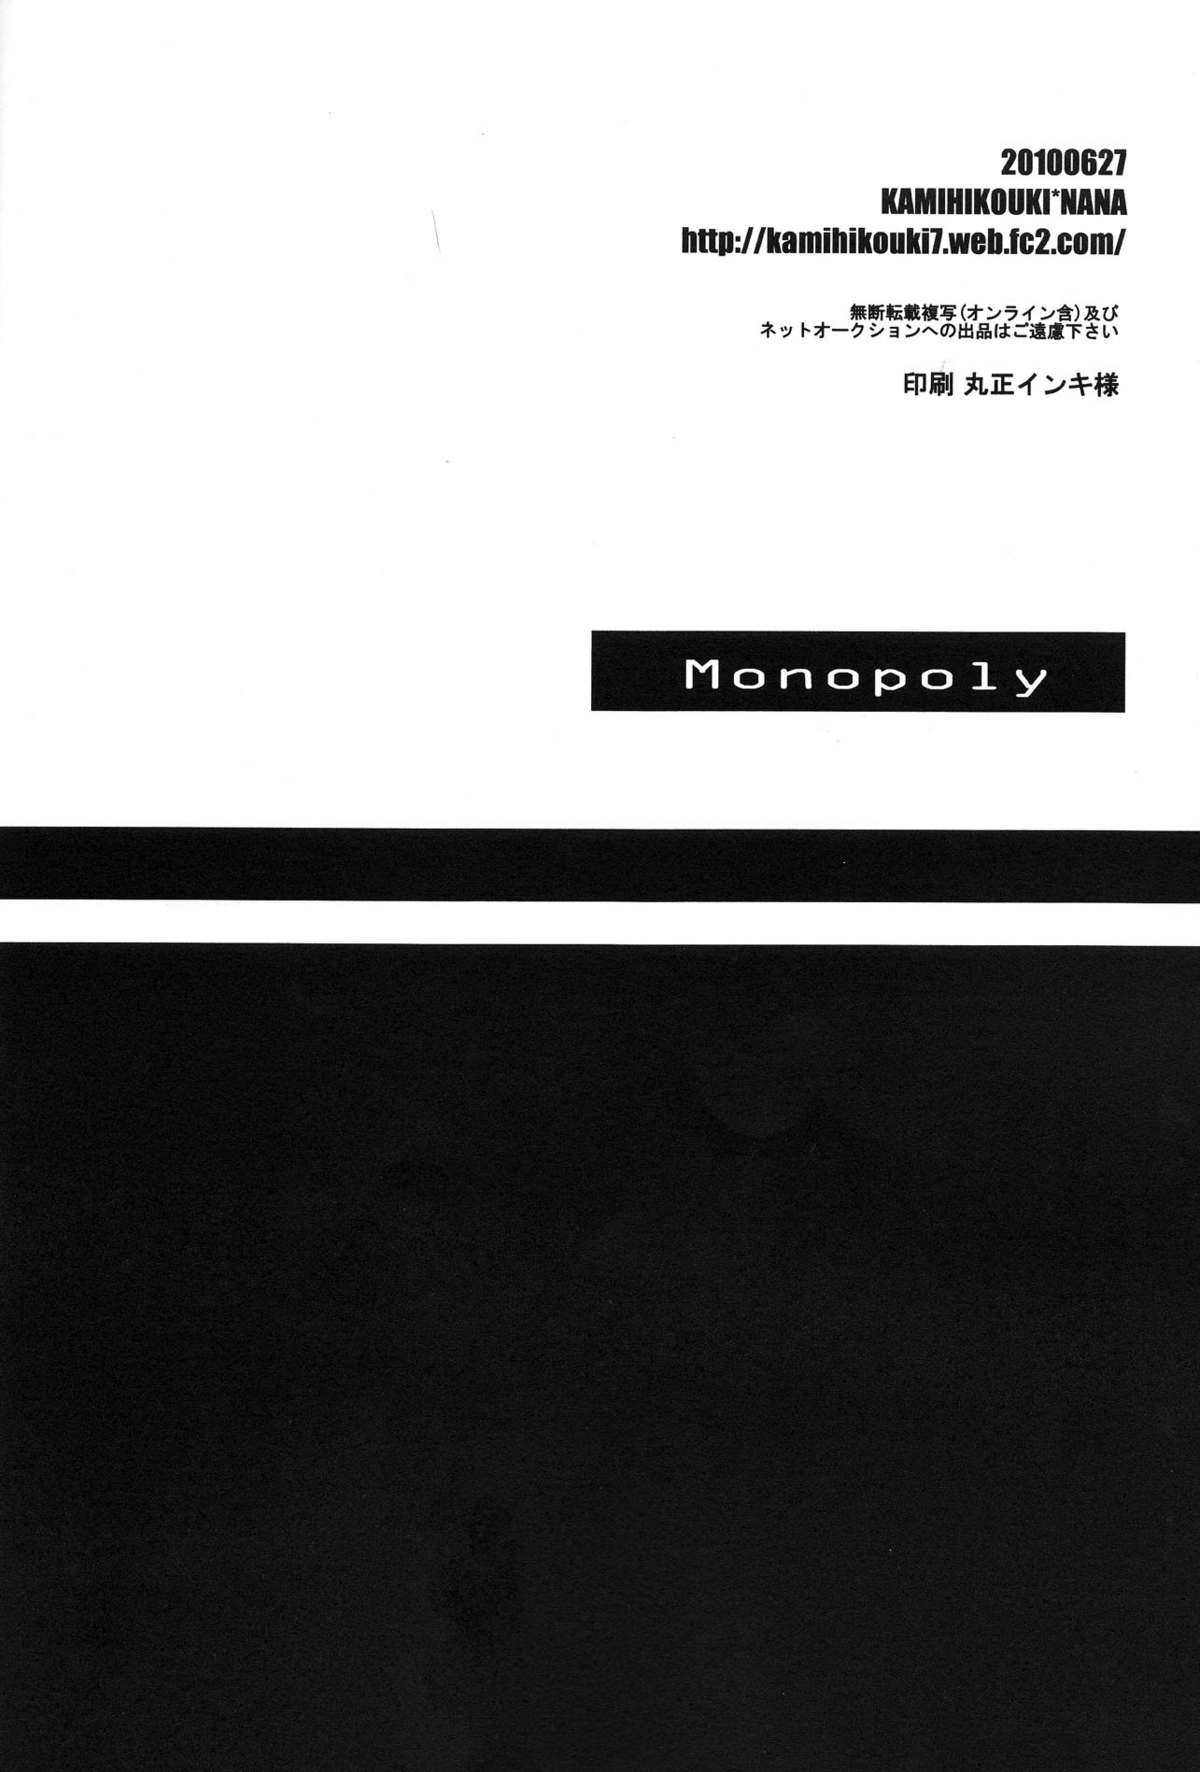 [KAMIHIKOUKI] Monopoly (Umineko no naku koro ni) 